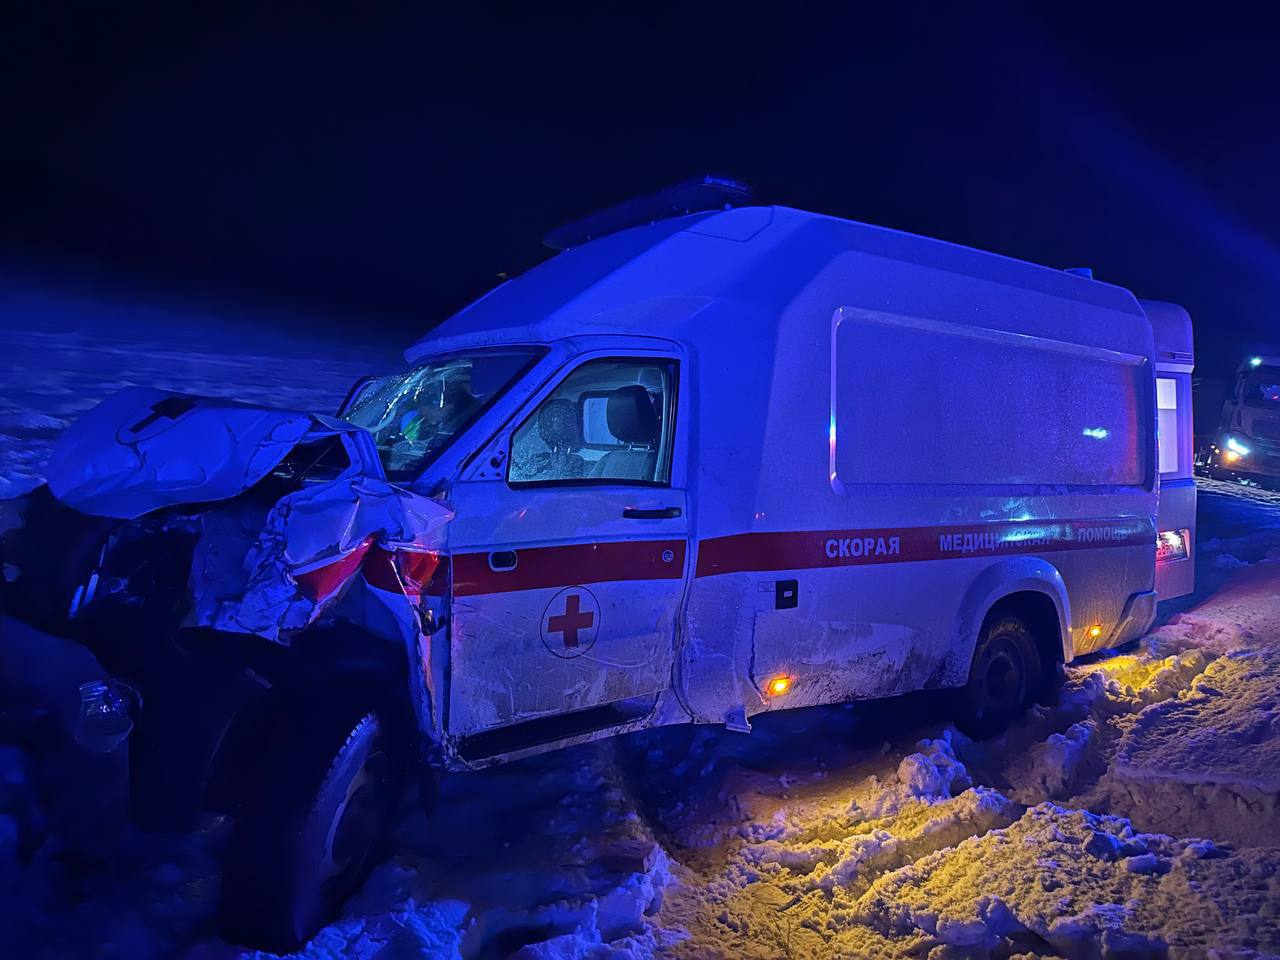 Один человек погиб, пятеро пострадали в ДТП со скорой в Красноярском крае. Фото © Telegram / МВД 24